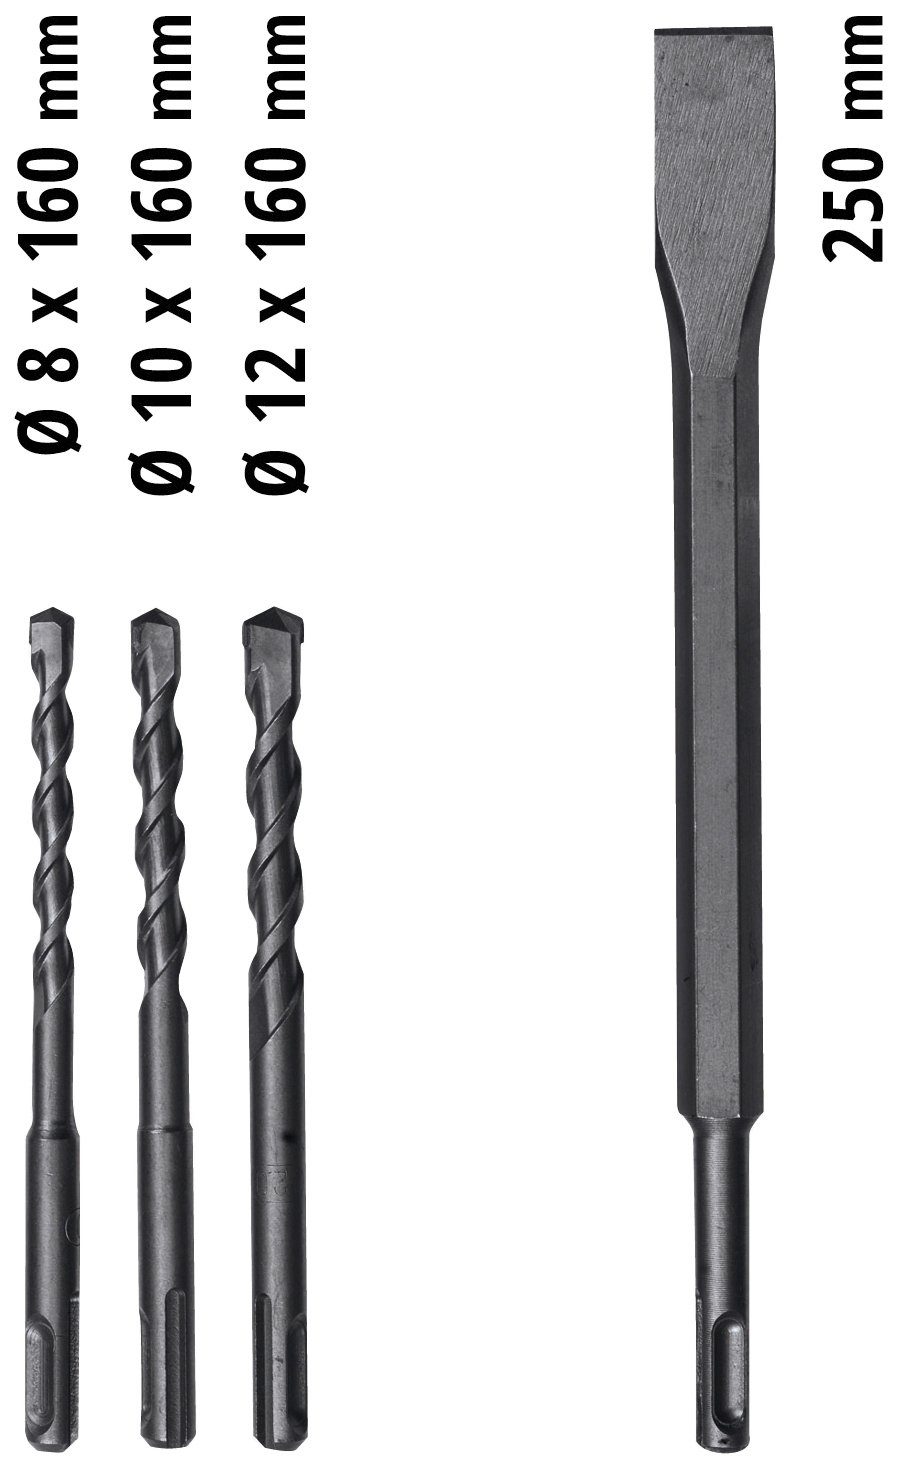 TC-RH 620 230 V Bohrhammer Einhell Kit, 4F